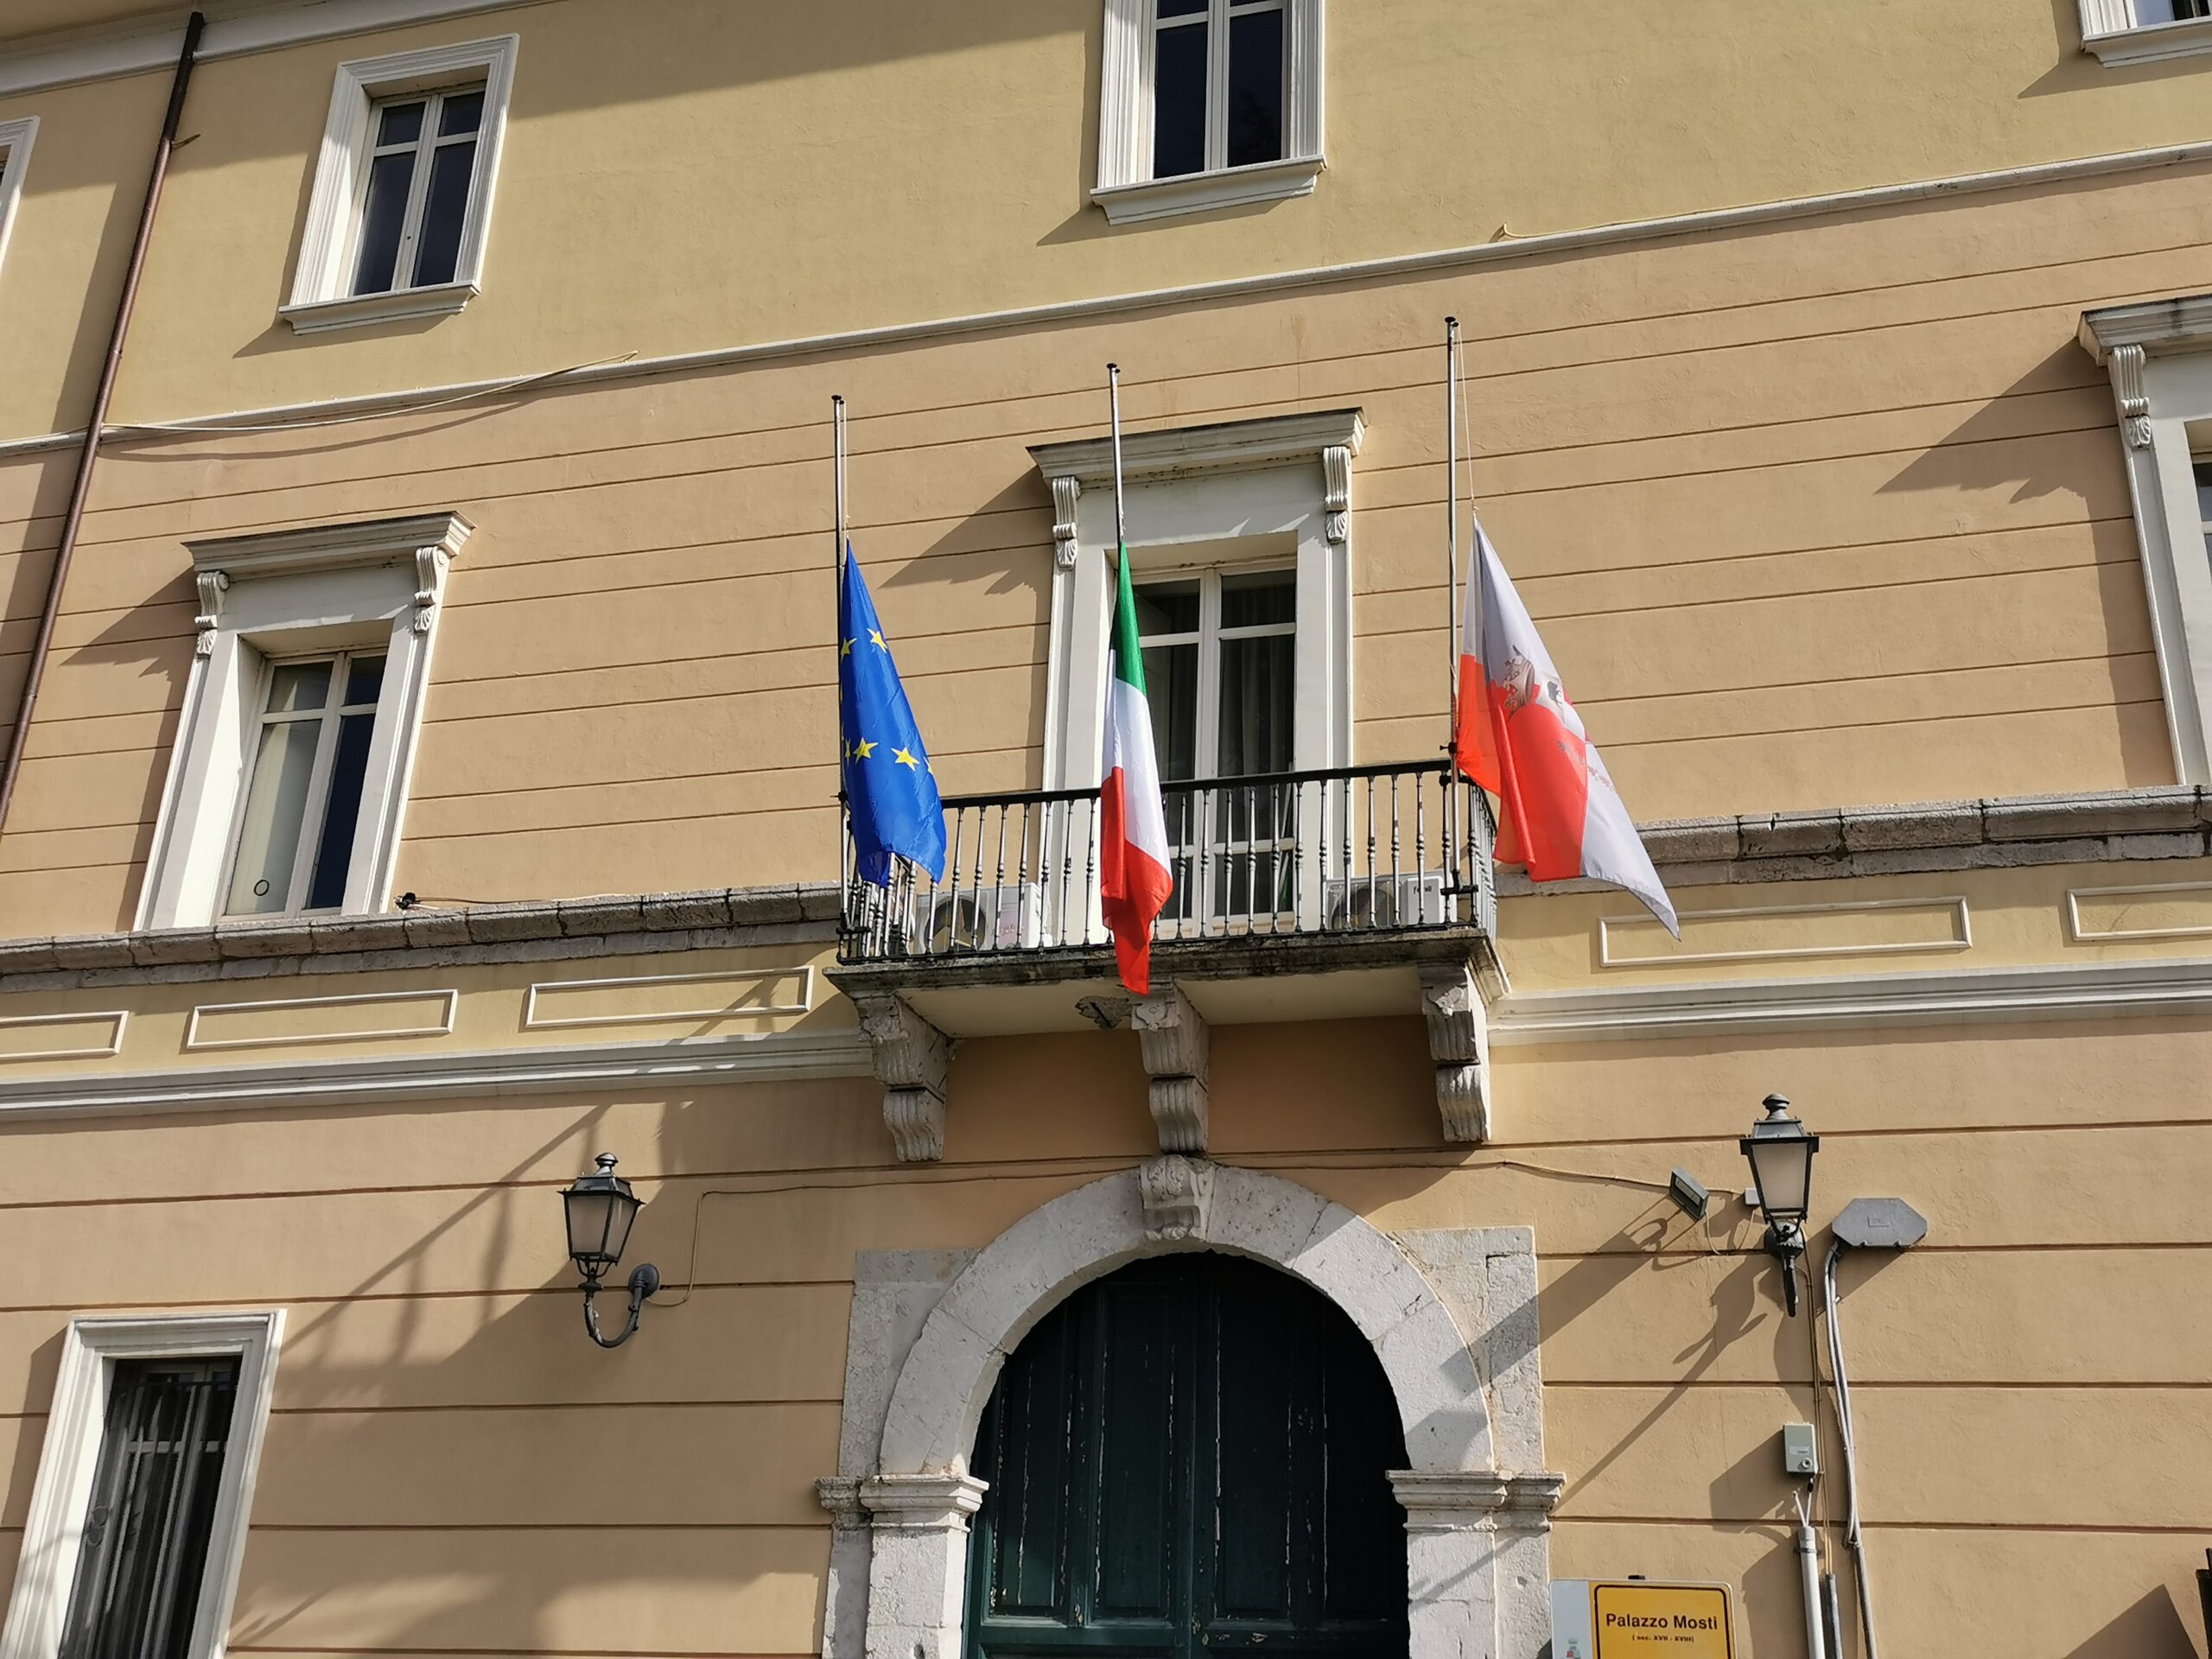 Giornata nazionale in memoria delle vittime dell’epidemia di Coronavirus, a Palazzo Mosti bandiera a mezz’asta